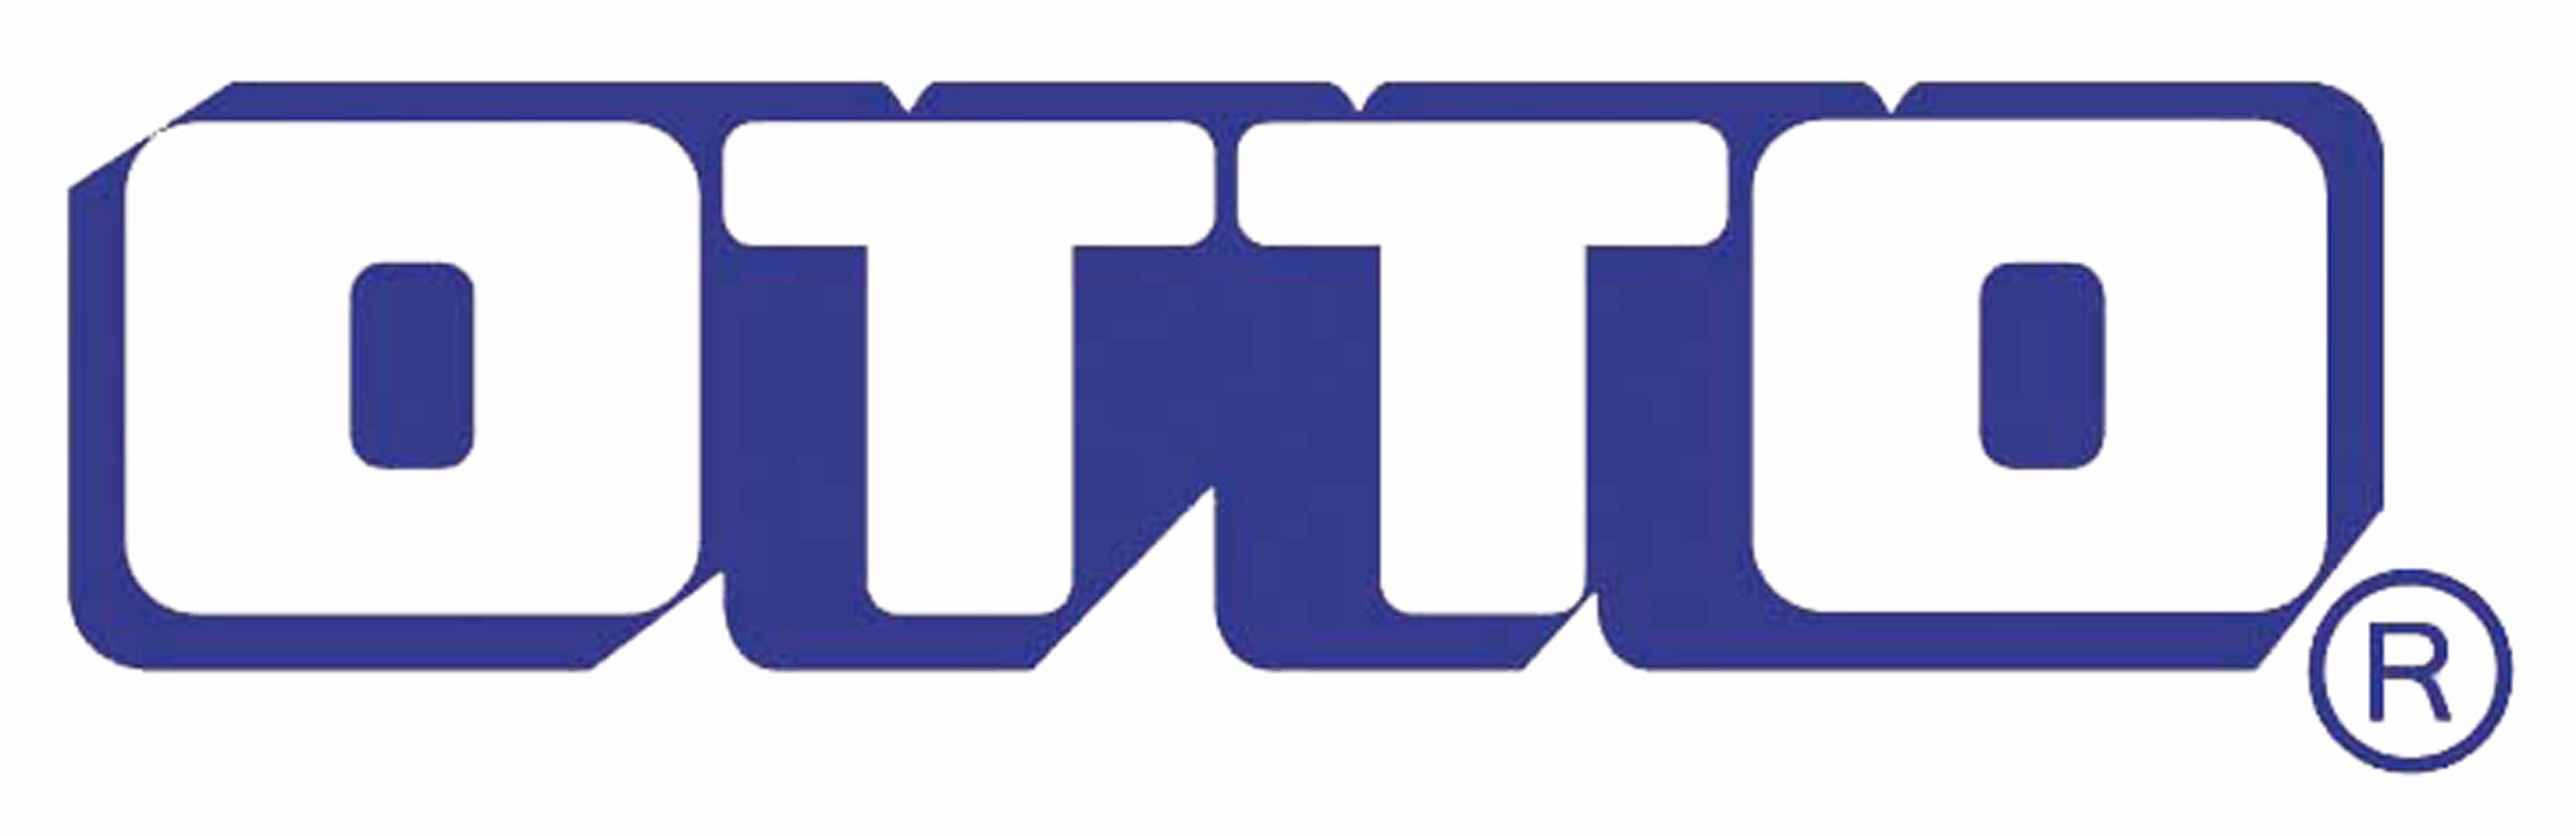 บริษัท ออตโต้ คิงส์กลาส จำกัด logo โลโก้